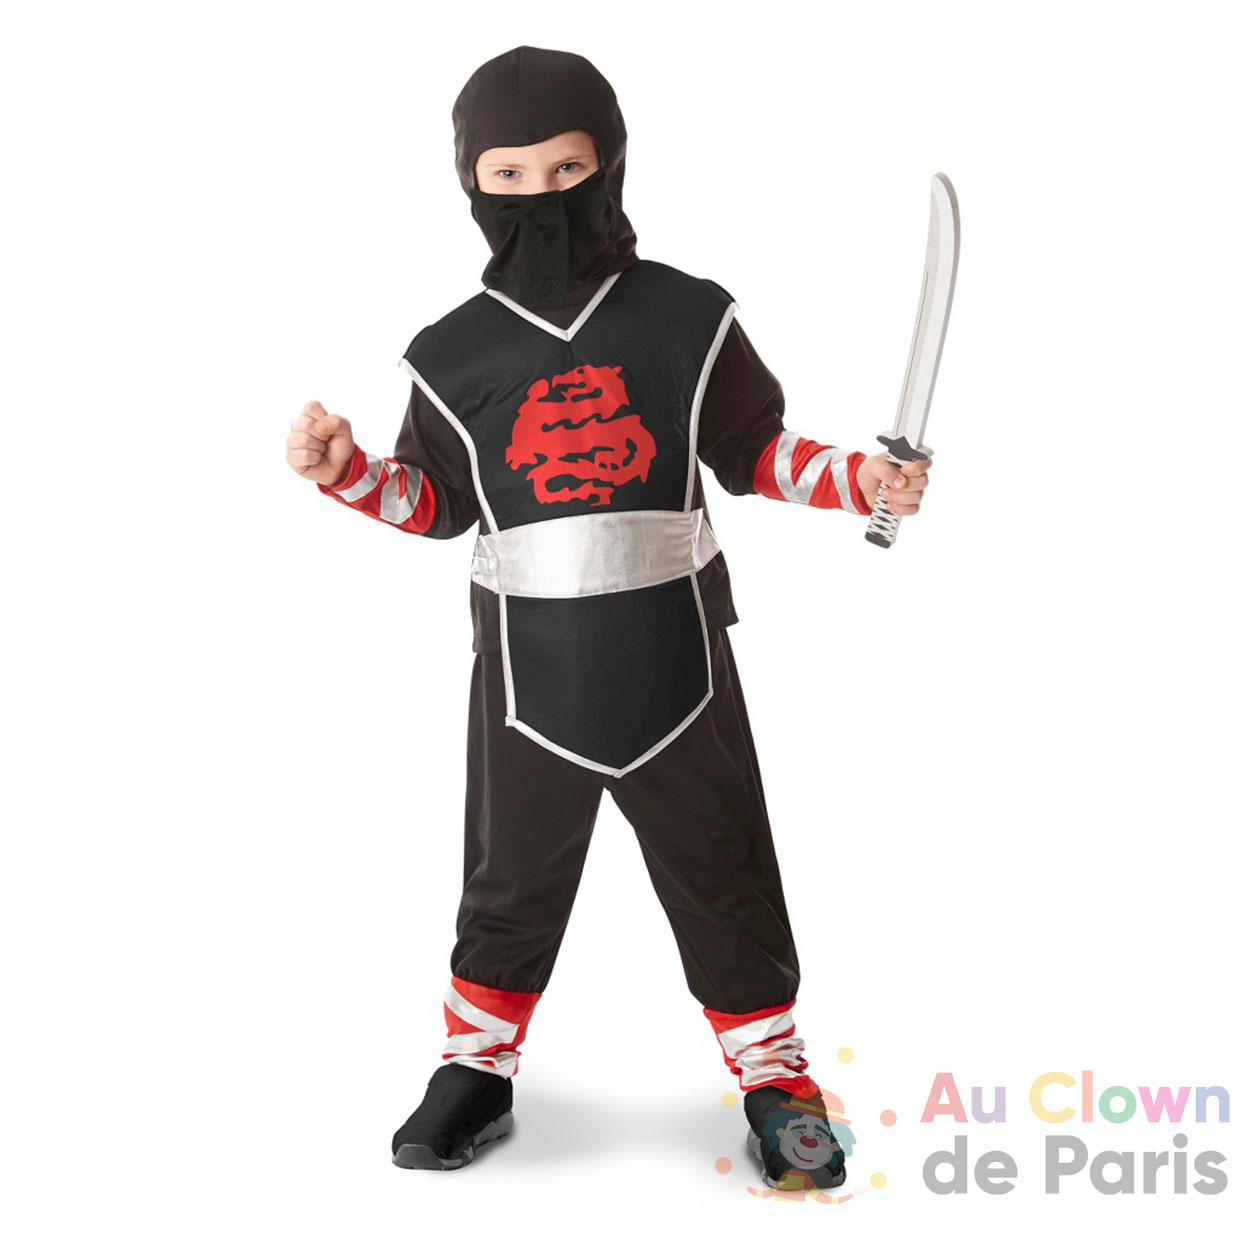 https://au-clown-de-paris.fr/wp-content/uploads/2021/01/deguisement-ninja-enfant.jpg